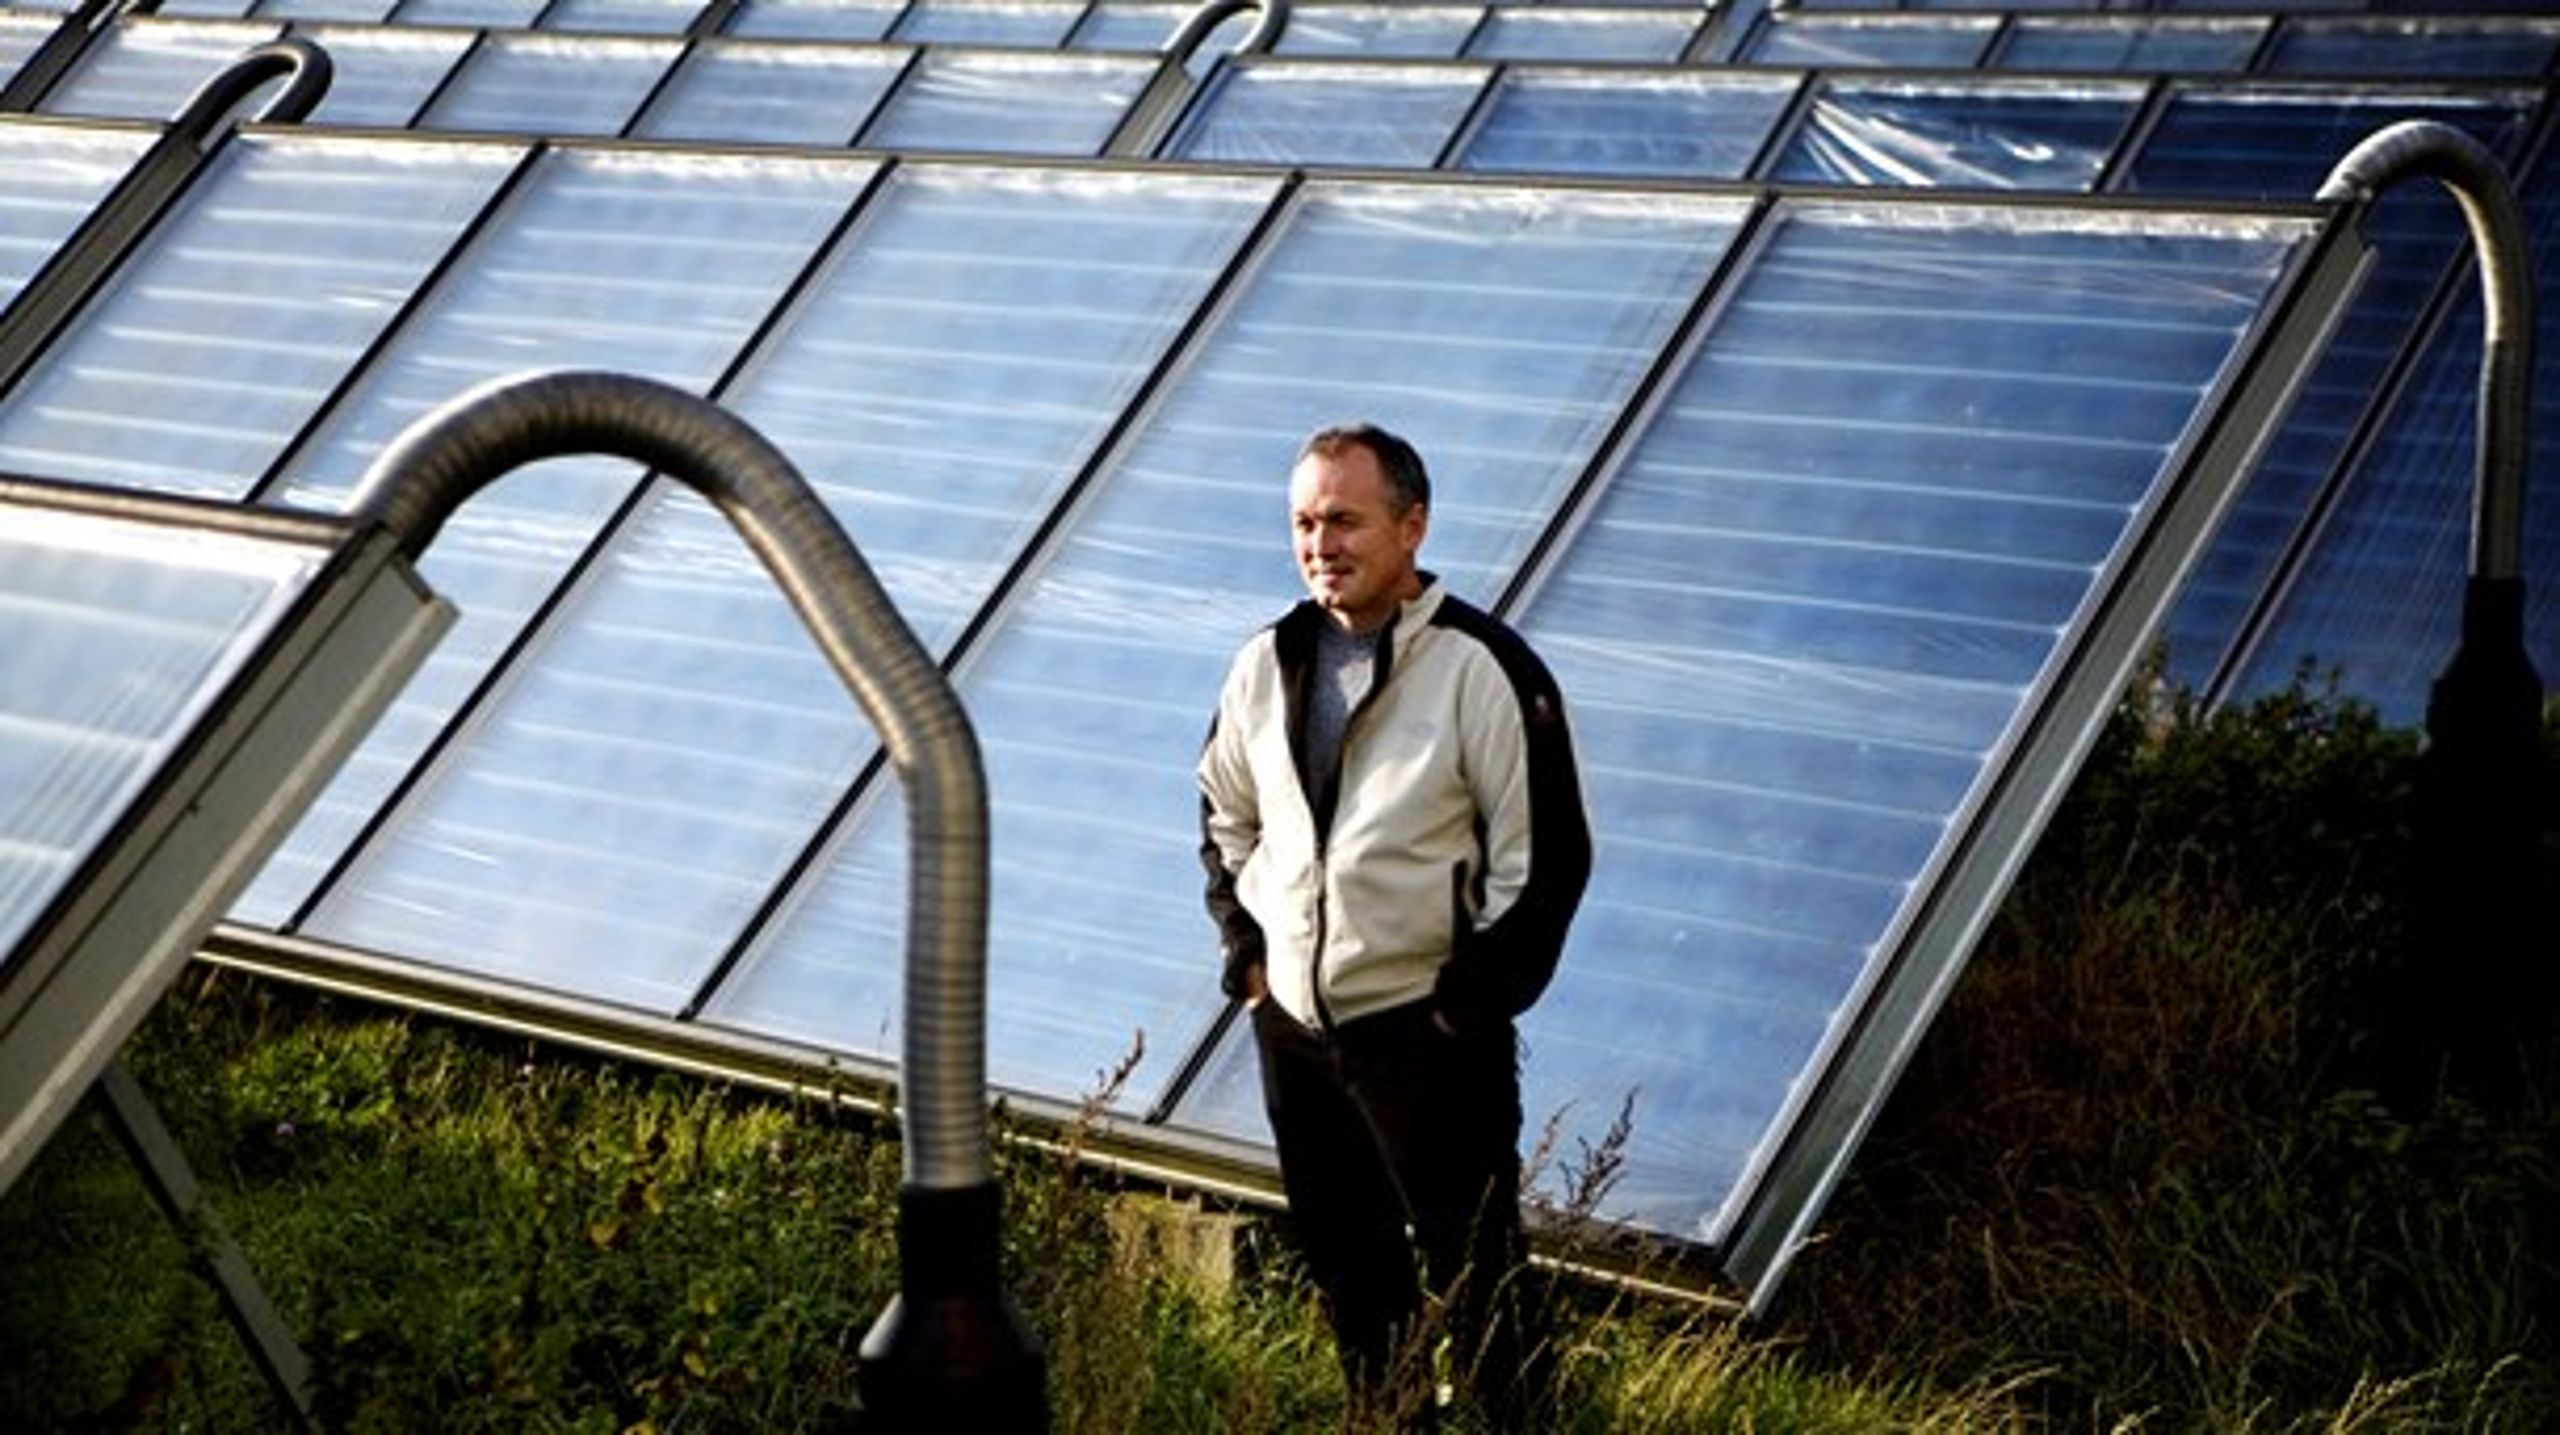 Søren Hermansen har været med til at gøre Samsø CO2-neutral og er udnævnt til en af "miljøets helte" i Time Magazine. Her fotograferet ved solfangere i Nordby.&nbsp;